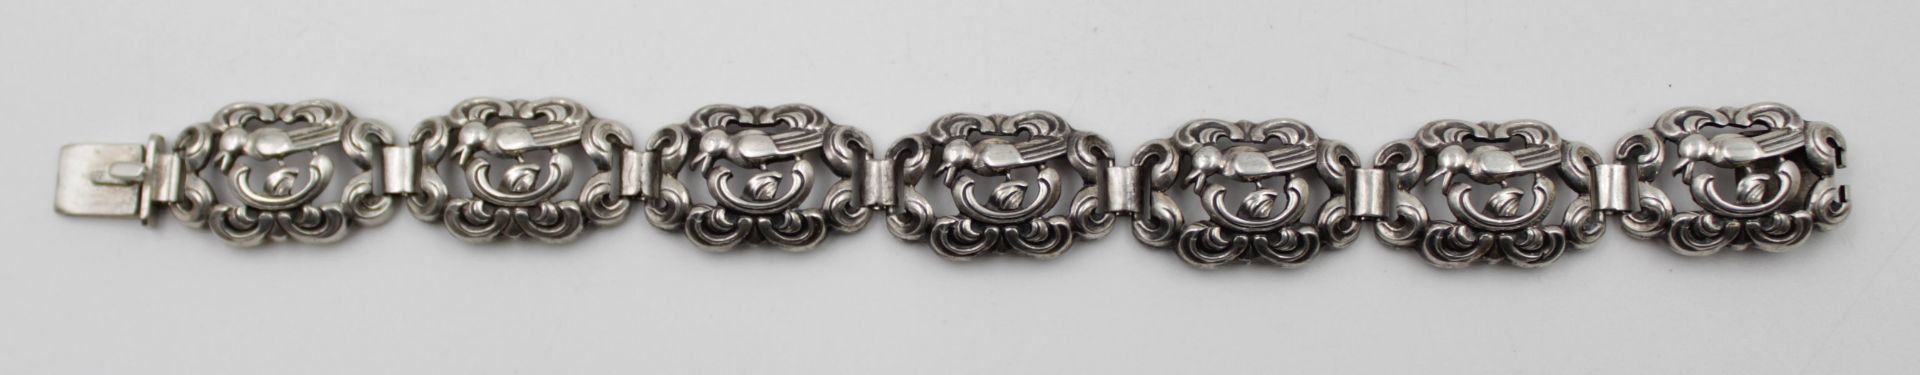 835er Silber-Armband, Durchbrucharbeit, 20/30er Jahre, 24,4gr., L-19,5cm.